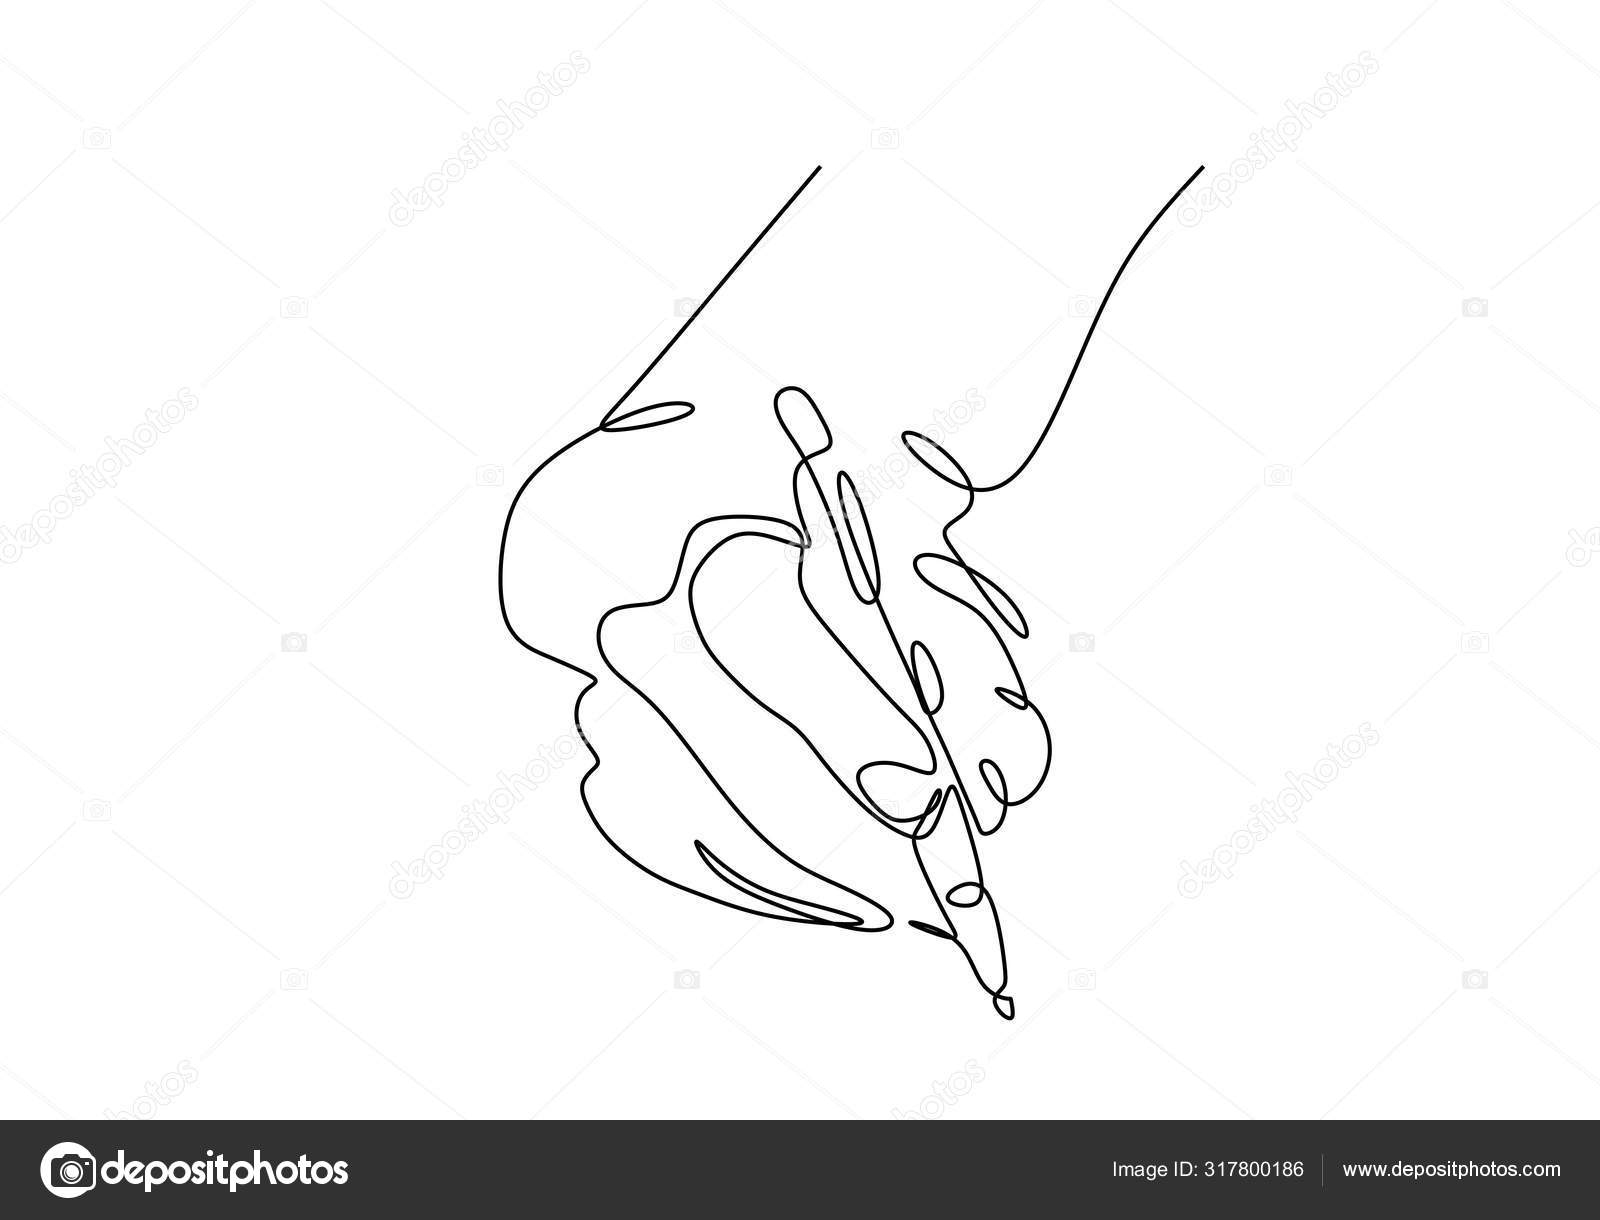 desenho de linha única contínua de escrita rápida de gesto de mão